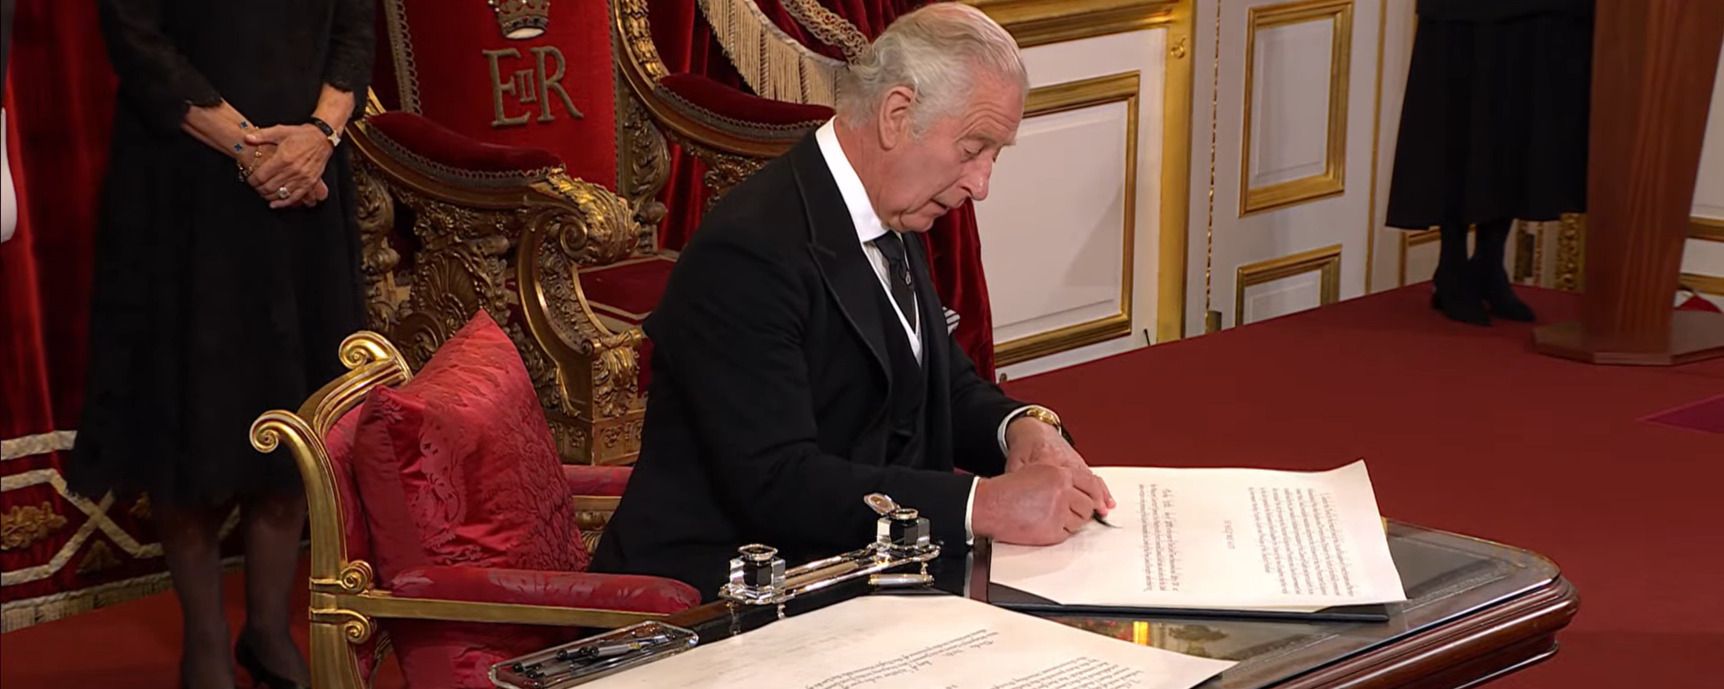 Король Чарльз III разгневался из-за ручки - курьезное видео